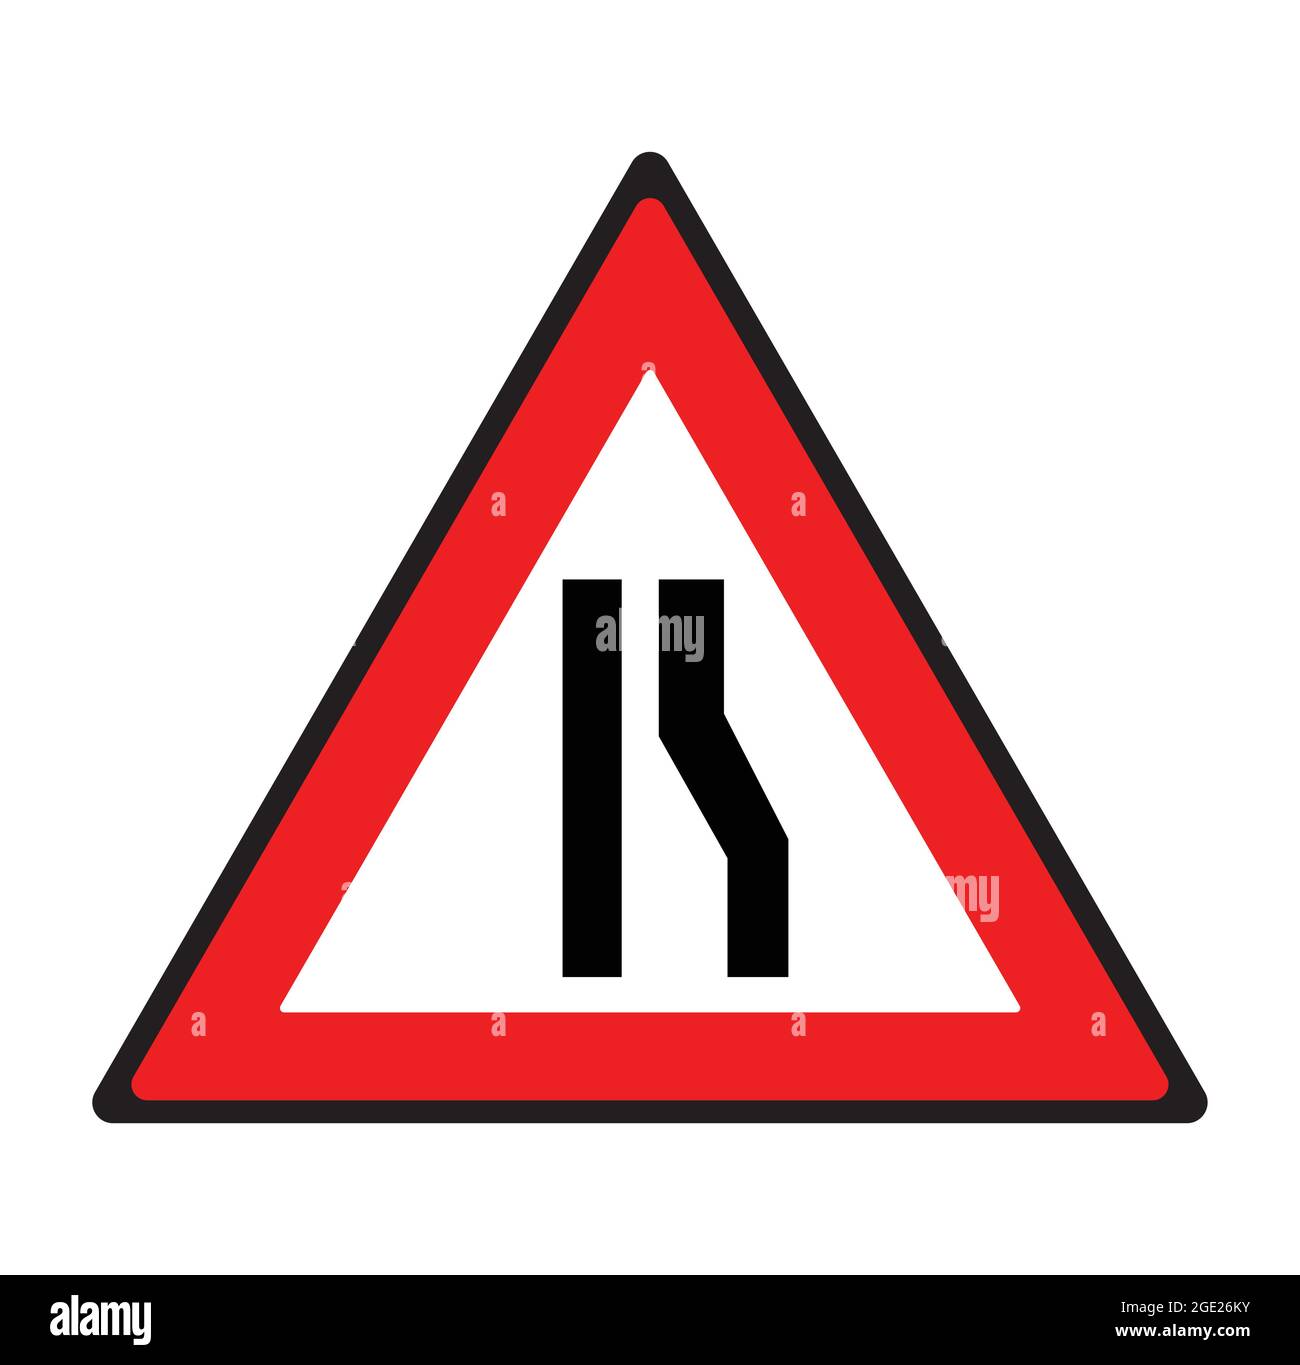 Segnale stradale stretto lato destro. Simbolo di sicurezza. Illustrazione Vettoriale